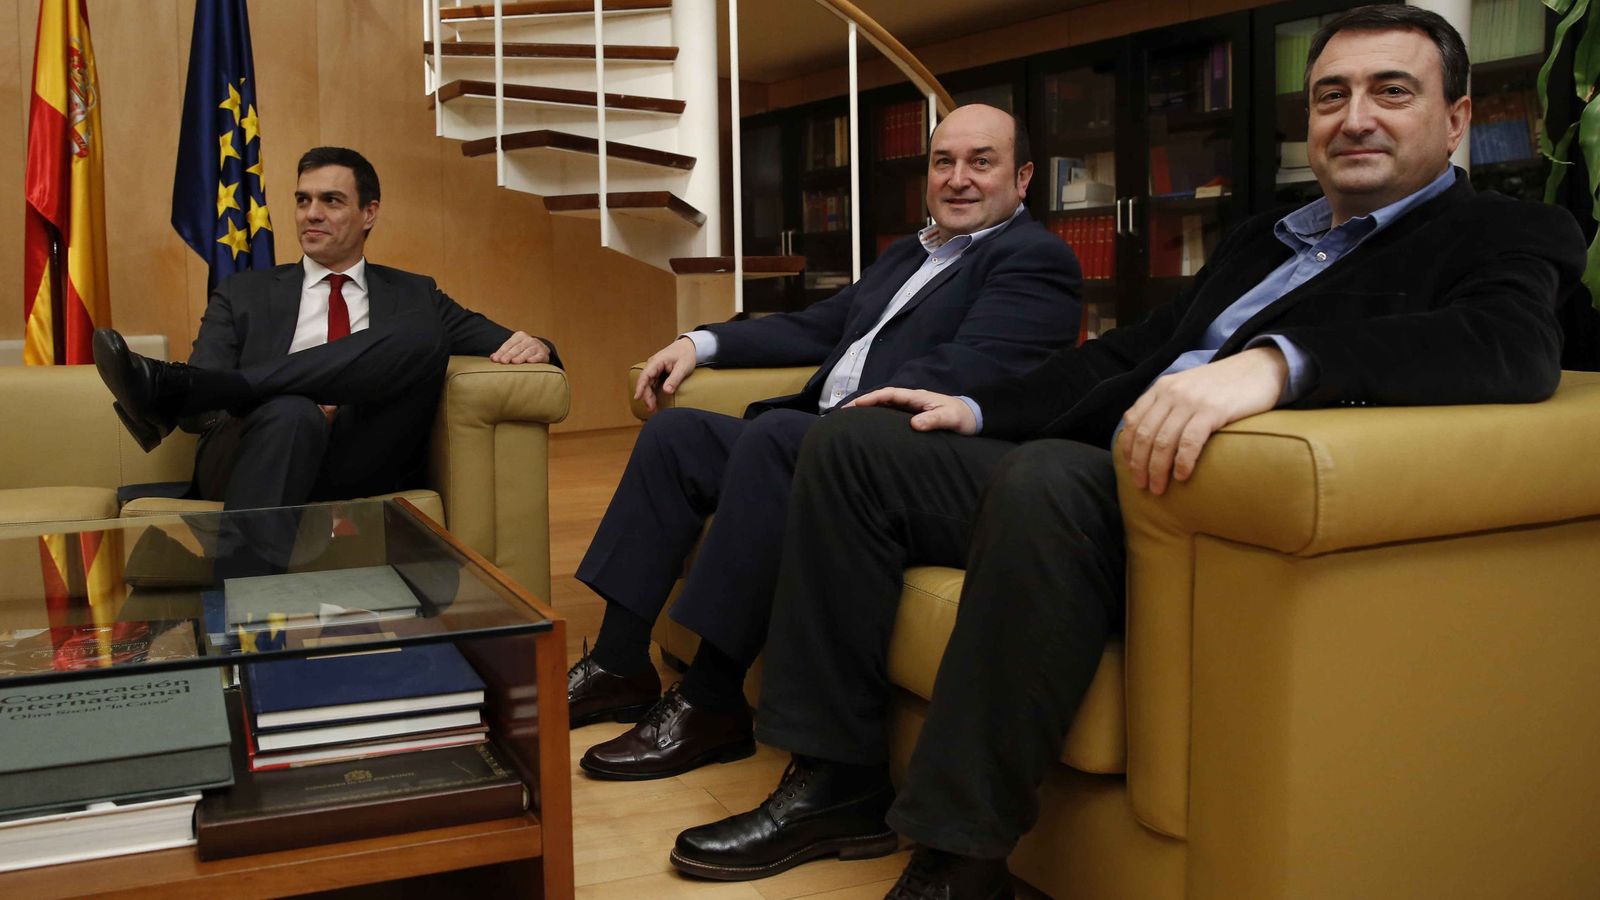 Foto: Sánchez (PSOE) junto con Esteban y Ortuzar (PNV),